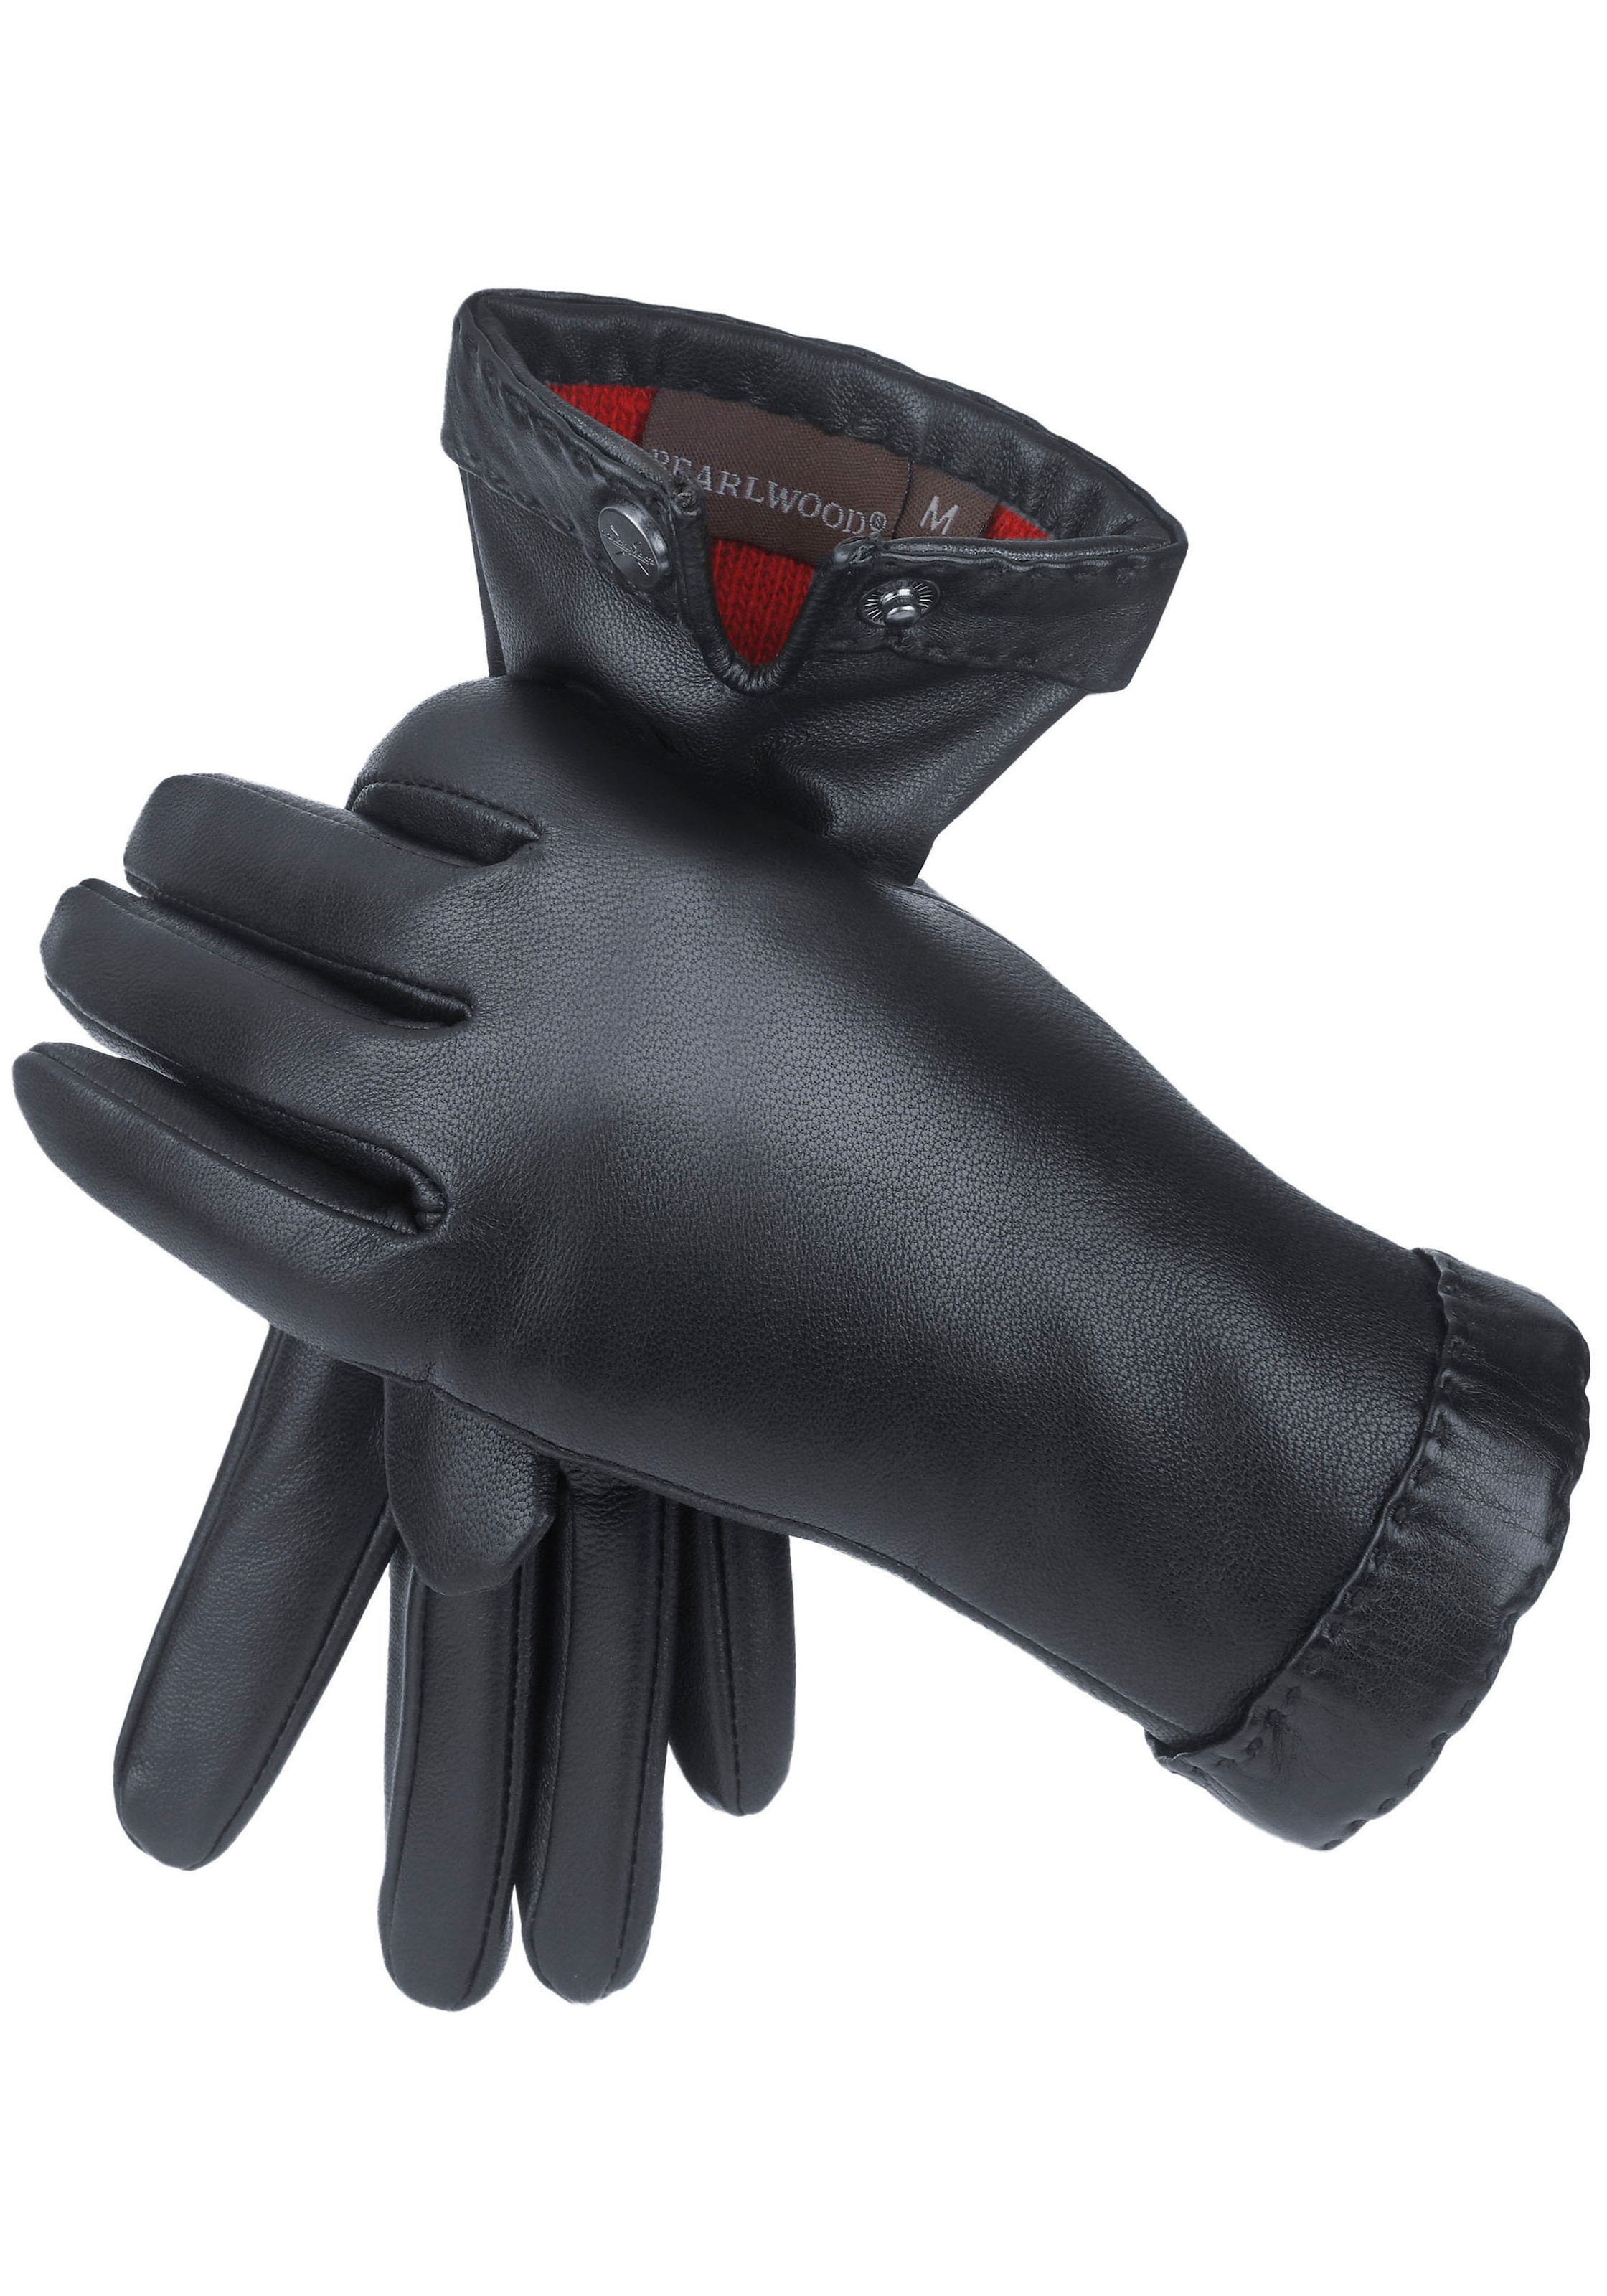 | Dekorative am PEARLWOOD Lederhandschuhe kaufen »Ann«, Bund online UNIVERSAL Handsteppung